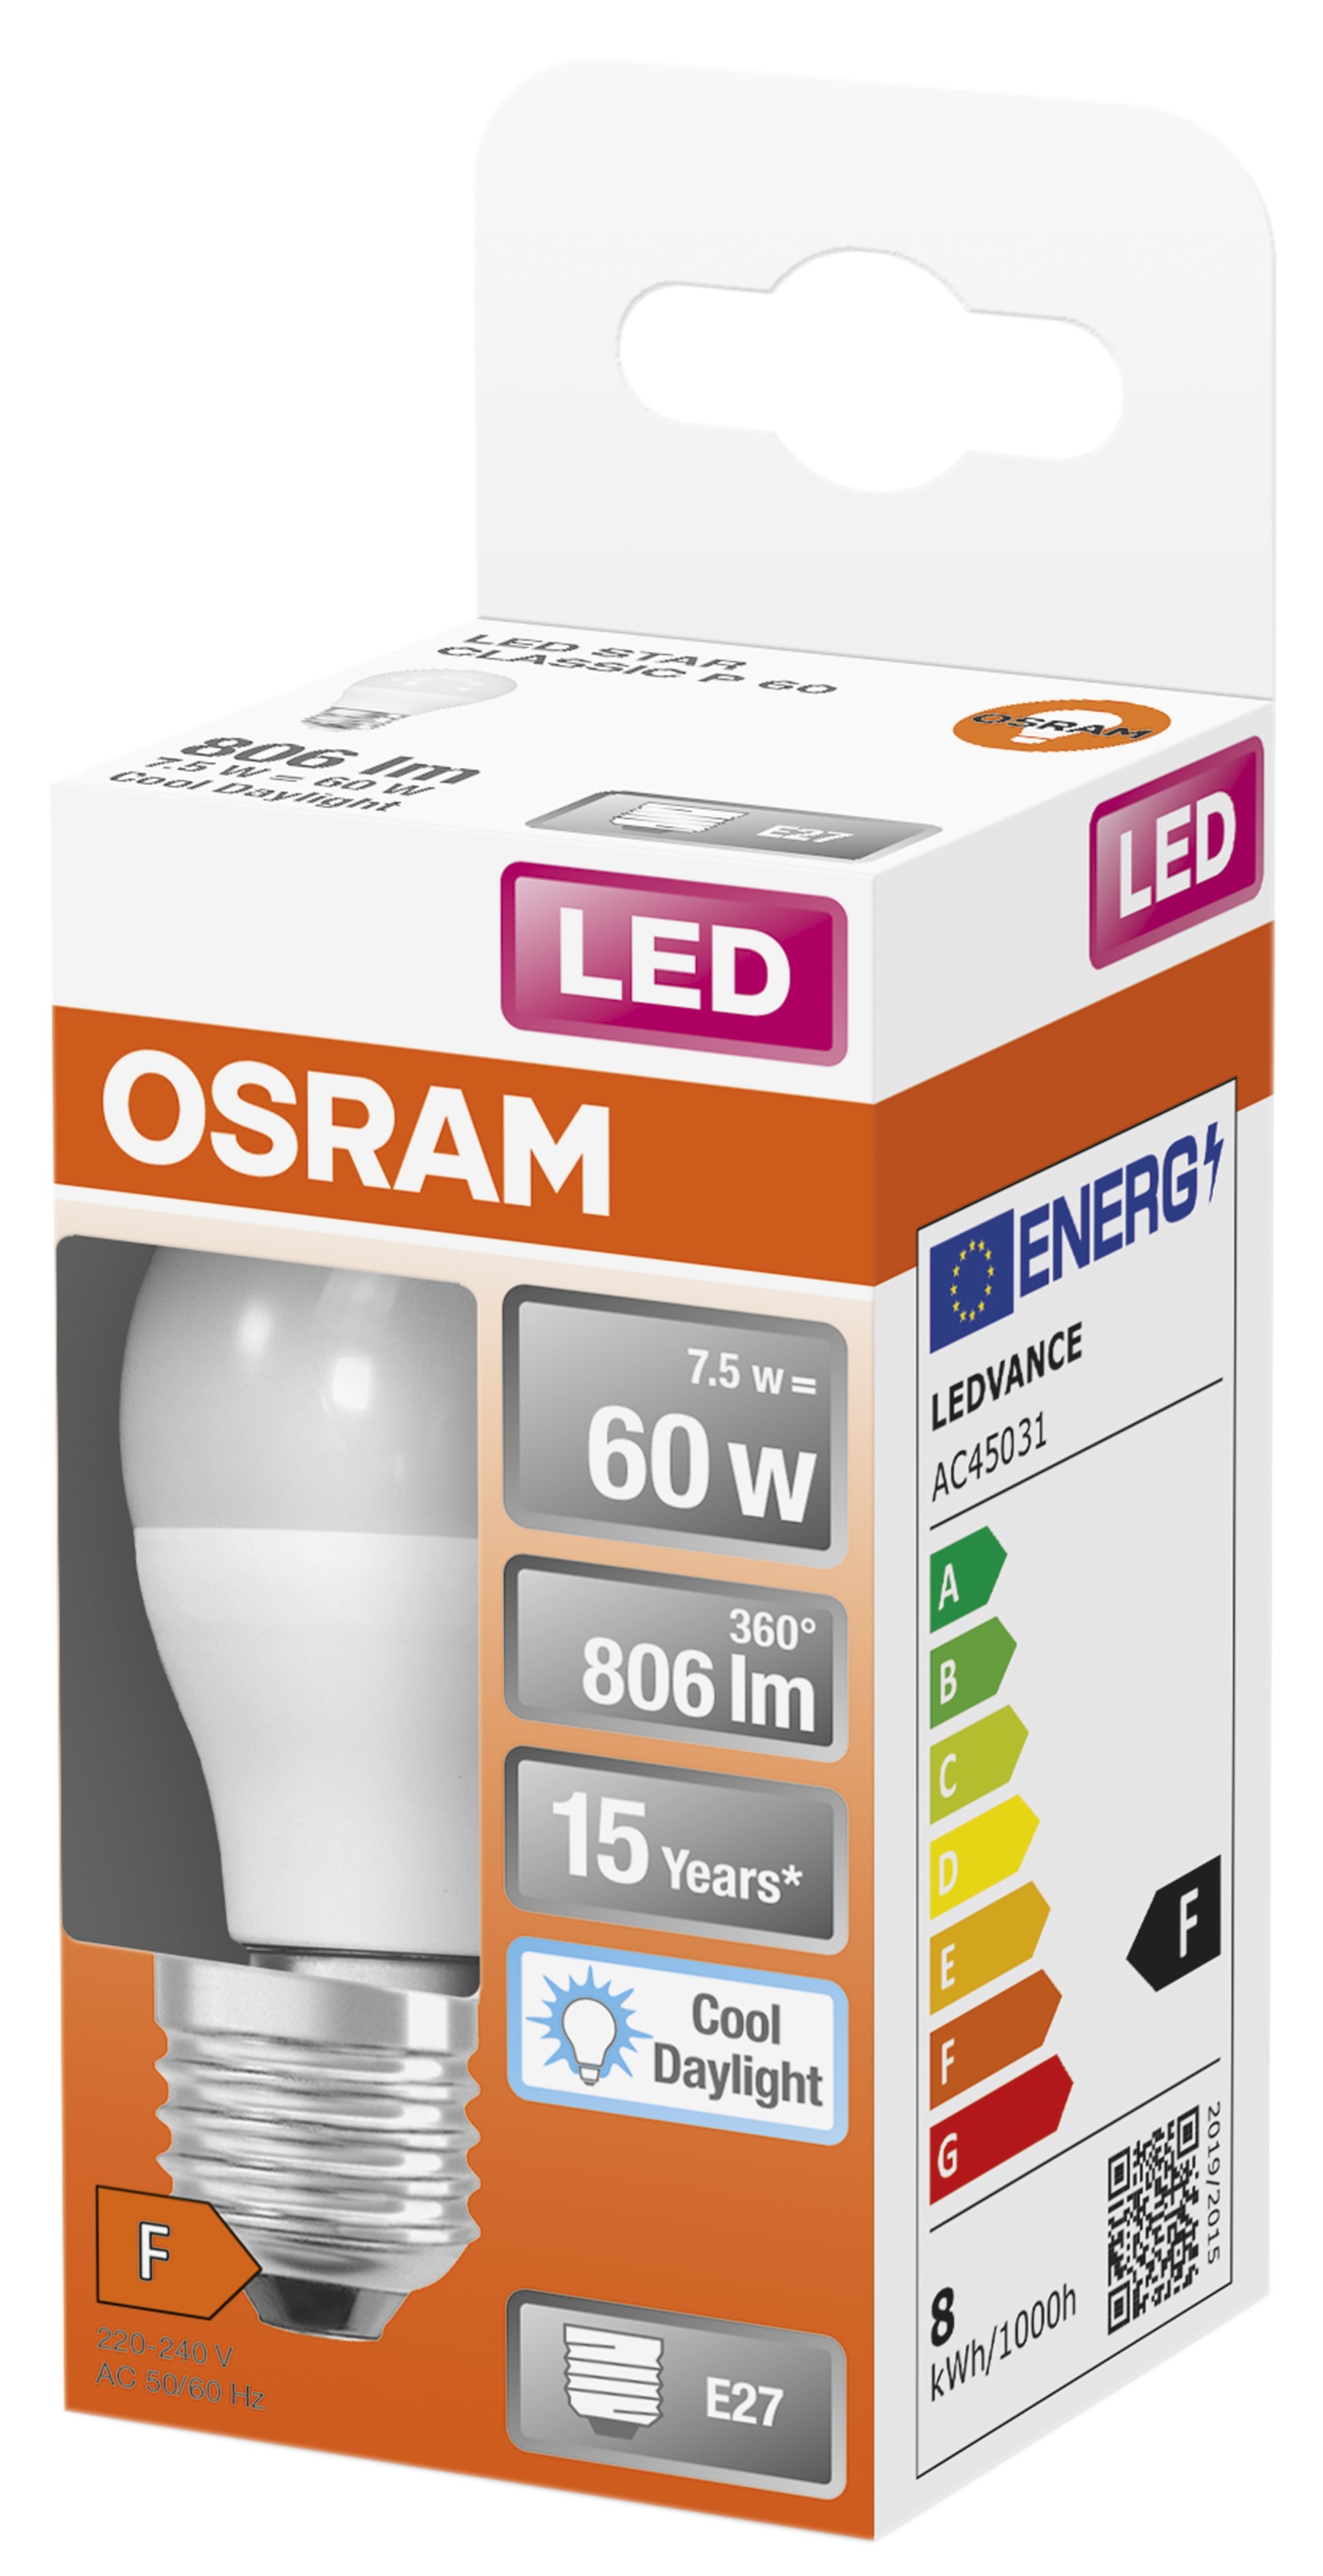 OSRAM LED-Lampe Star Classic, P60, E27, EEK: F, 7,5 W, 806 lm, 6500 K